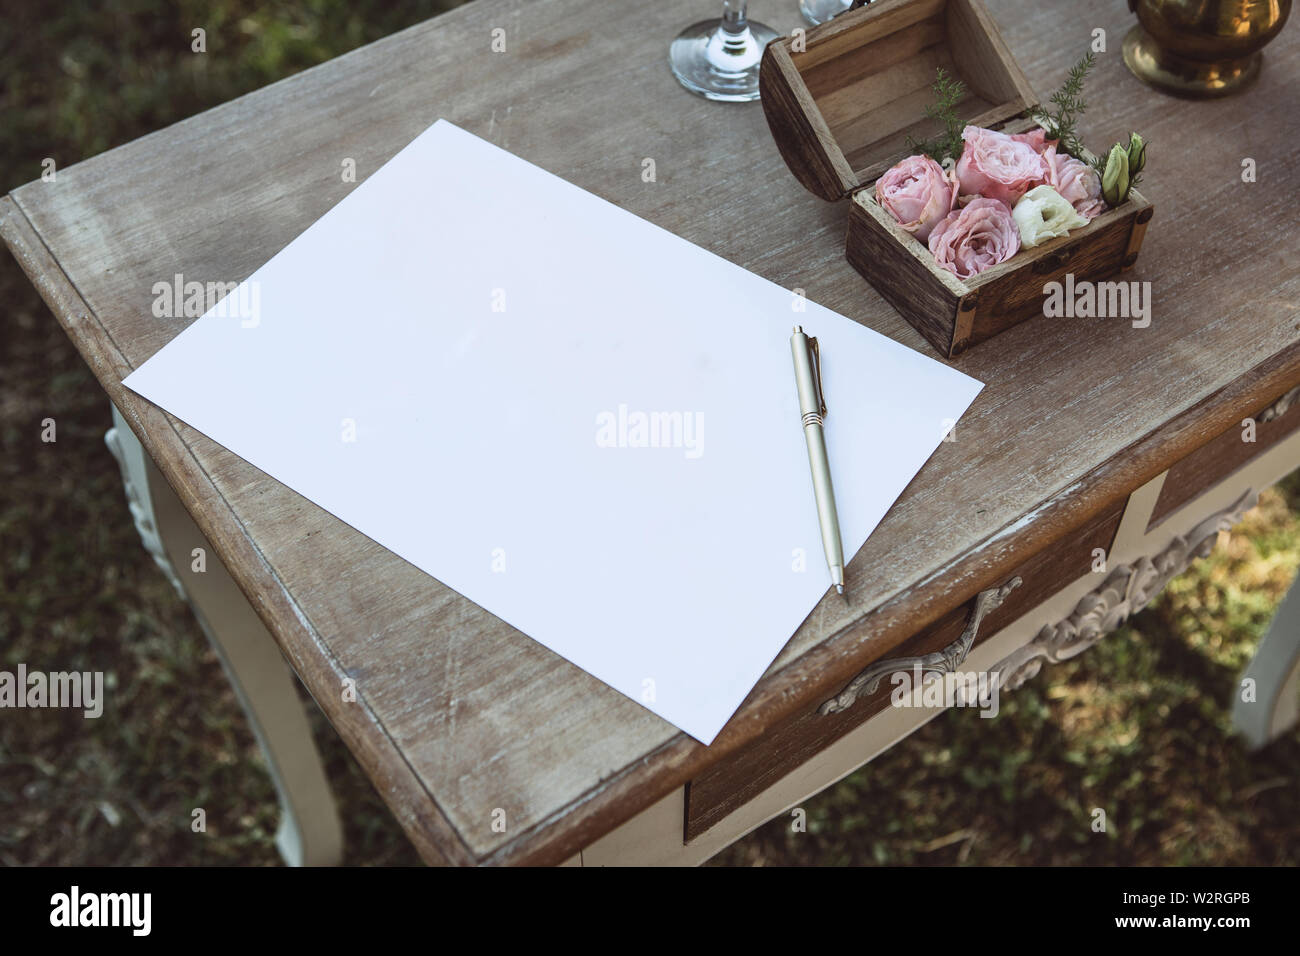 Ein leeres Blatt Papier und einen Stift auf einem hölzernen Tisch zum Schreiben einen Text oder ein Versprechen oder eine Hochzeit wünschen. Stockfoto